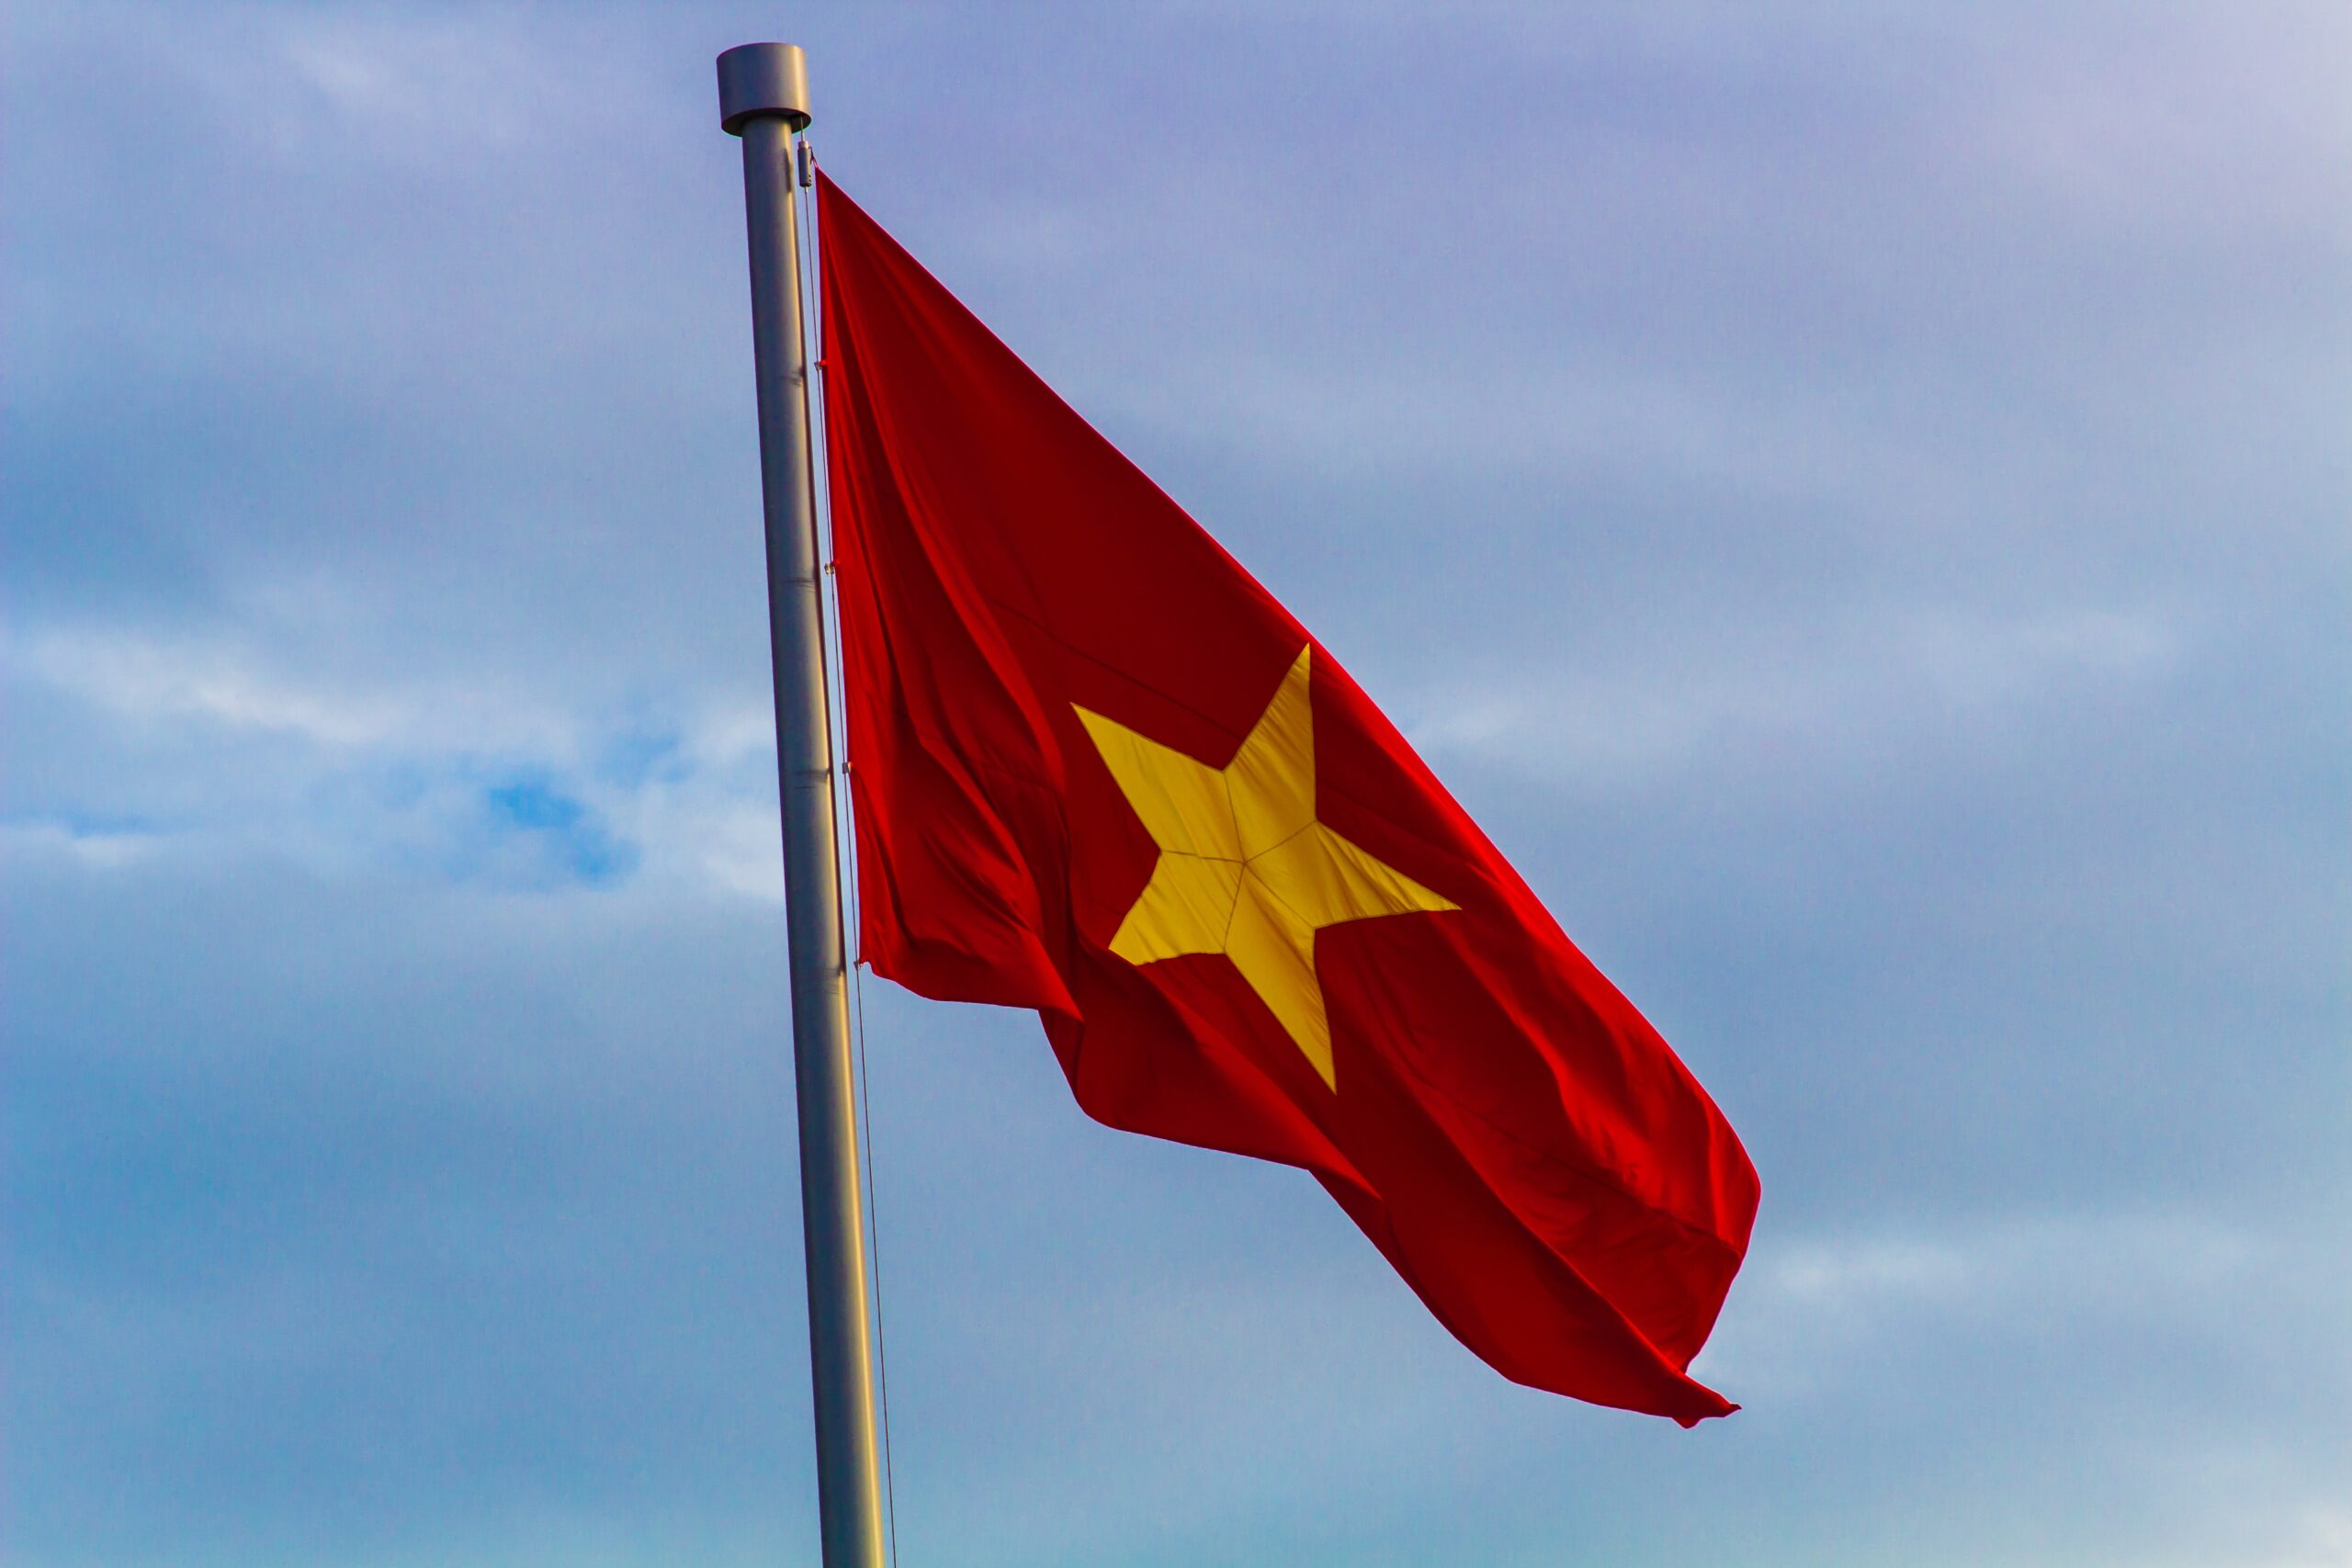  NGÀY RA ĐỜI CỜ TỔ QUỐC   Lá cờ đỏ nhiều thập kỉ  qua luôn gắn liền với những sự kiện lịch sử hào hùng của dân tộc ta trong